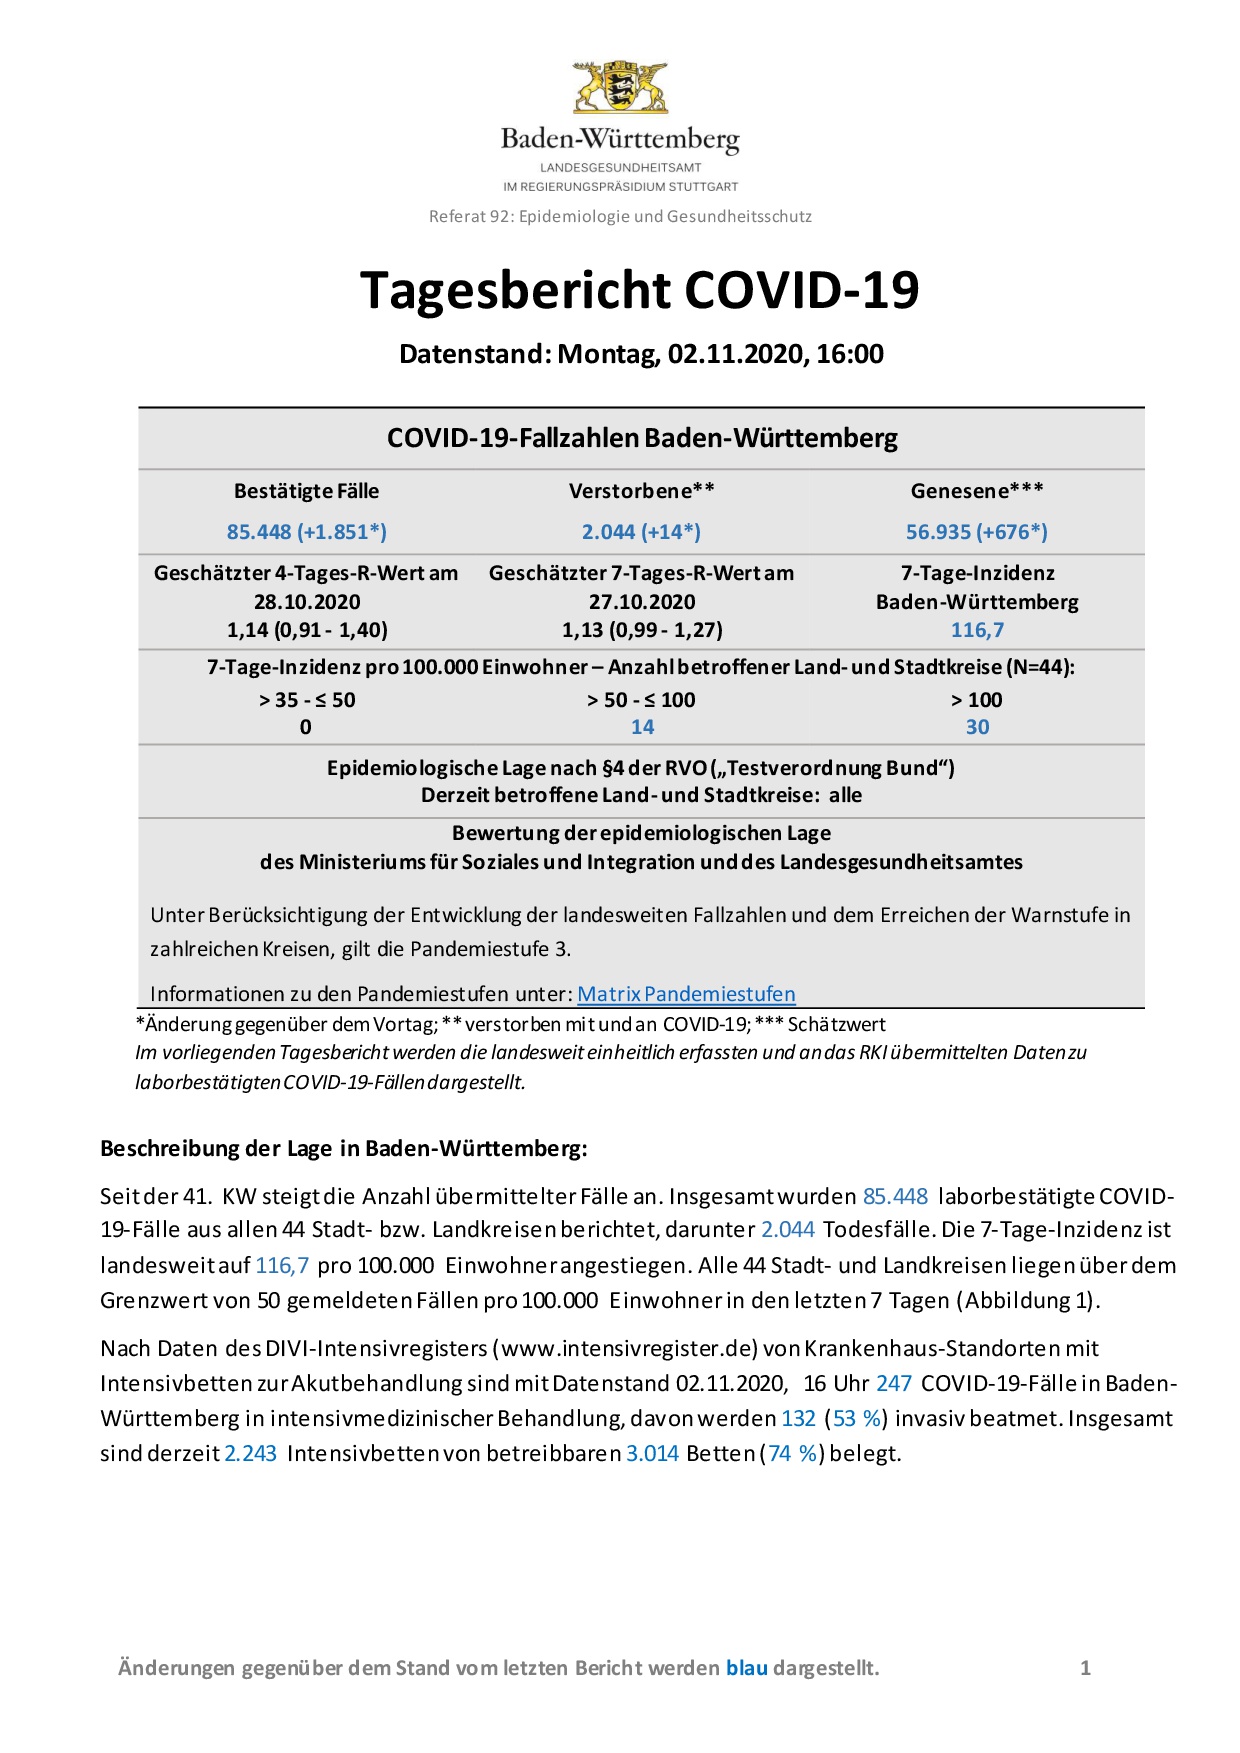 COVID-19 Tagesbericht (02.11.2020) des Landesgesundheitsamts Baden-Württemberg – (ausführlicher)